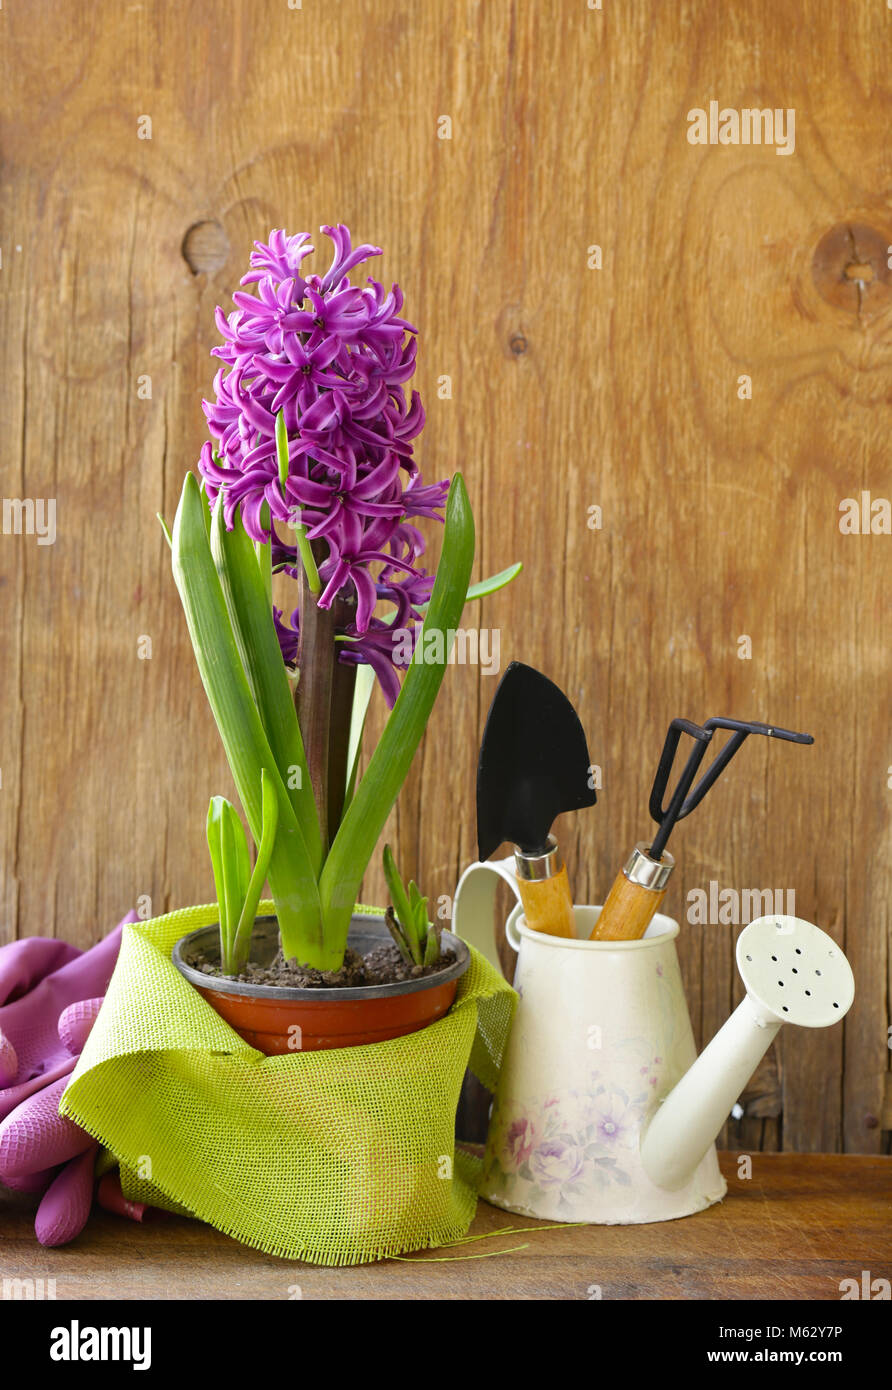 Home Giardinaggio - fiori ed erbe, degli strumenti e delle piante Foto Stock